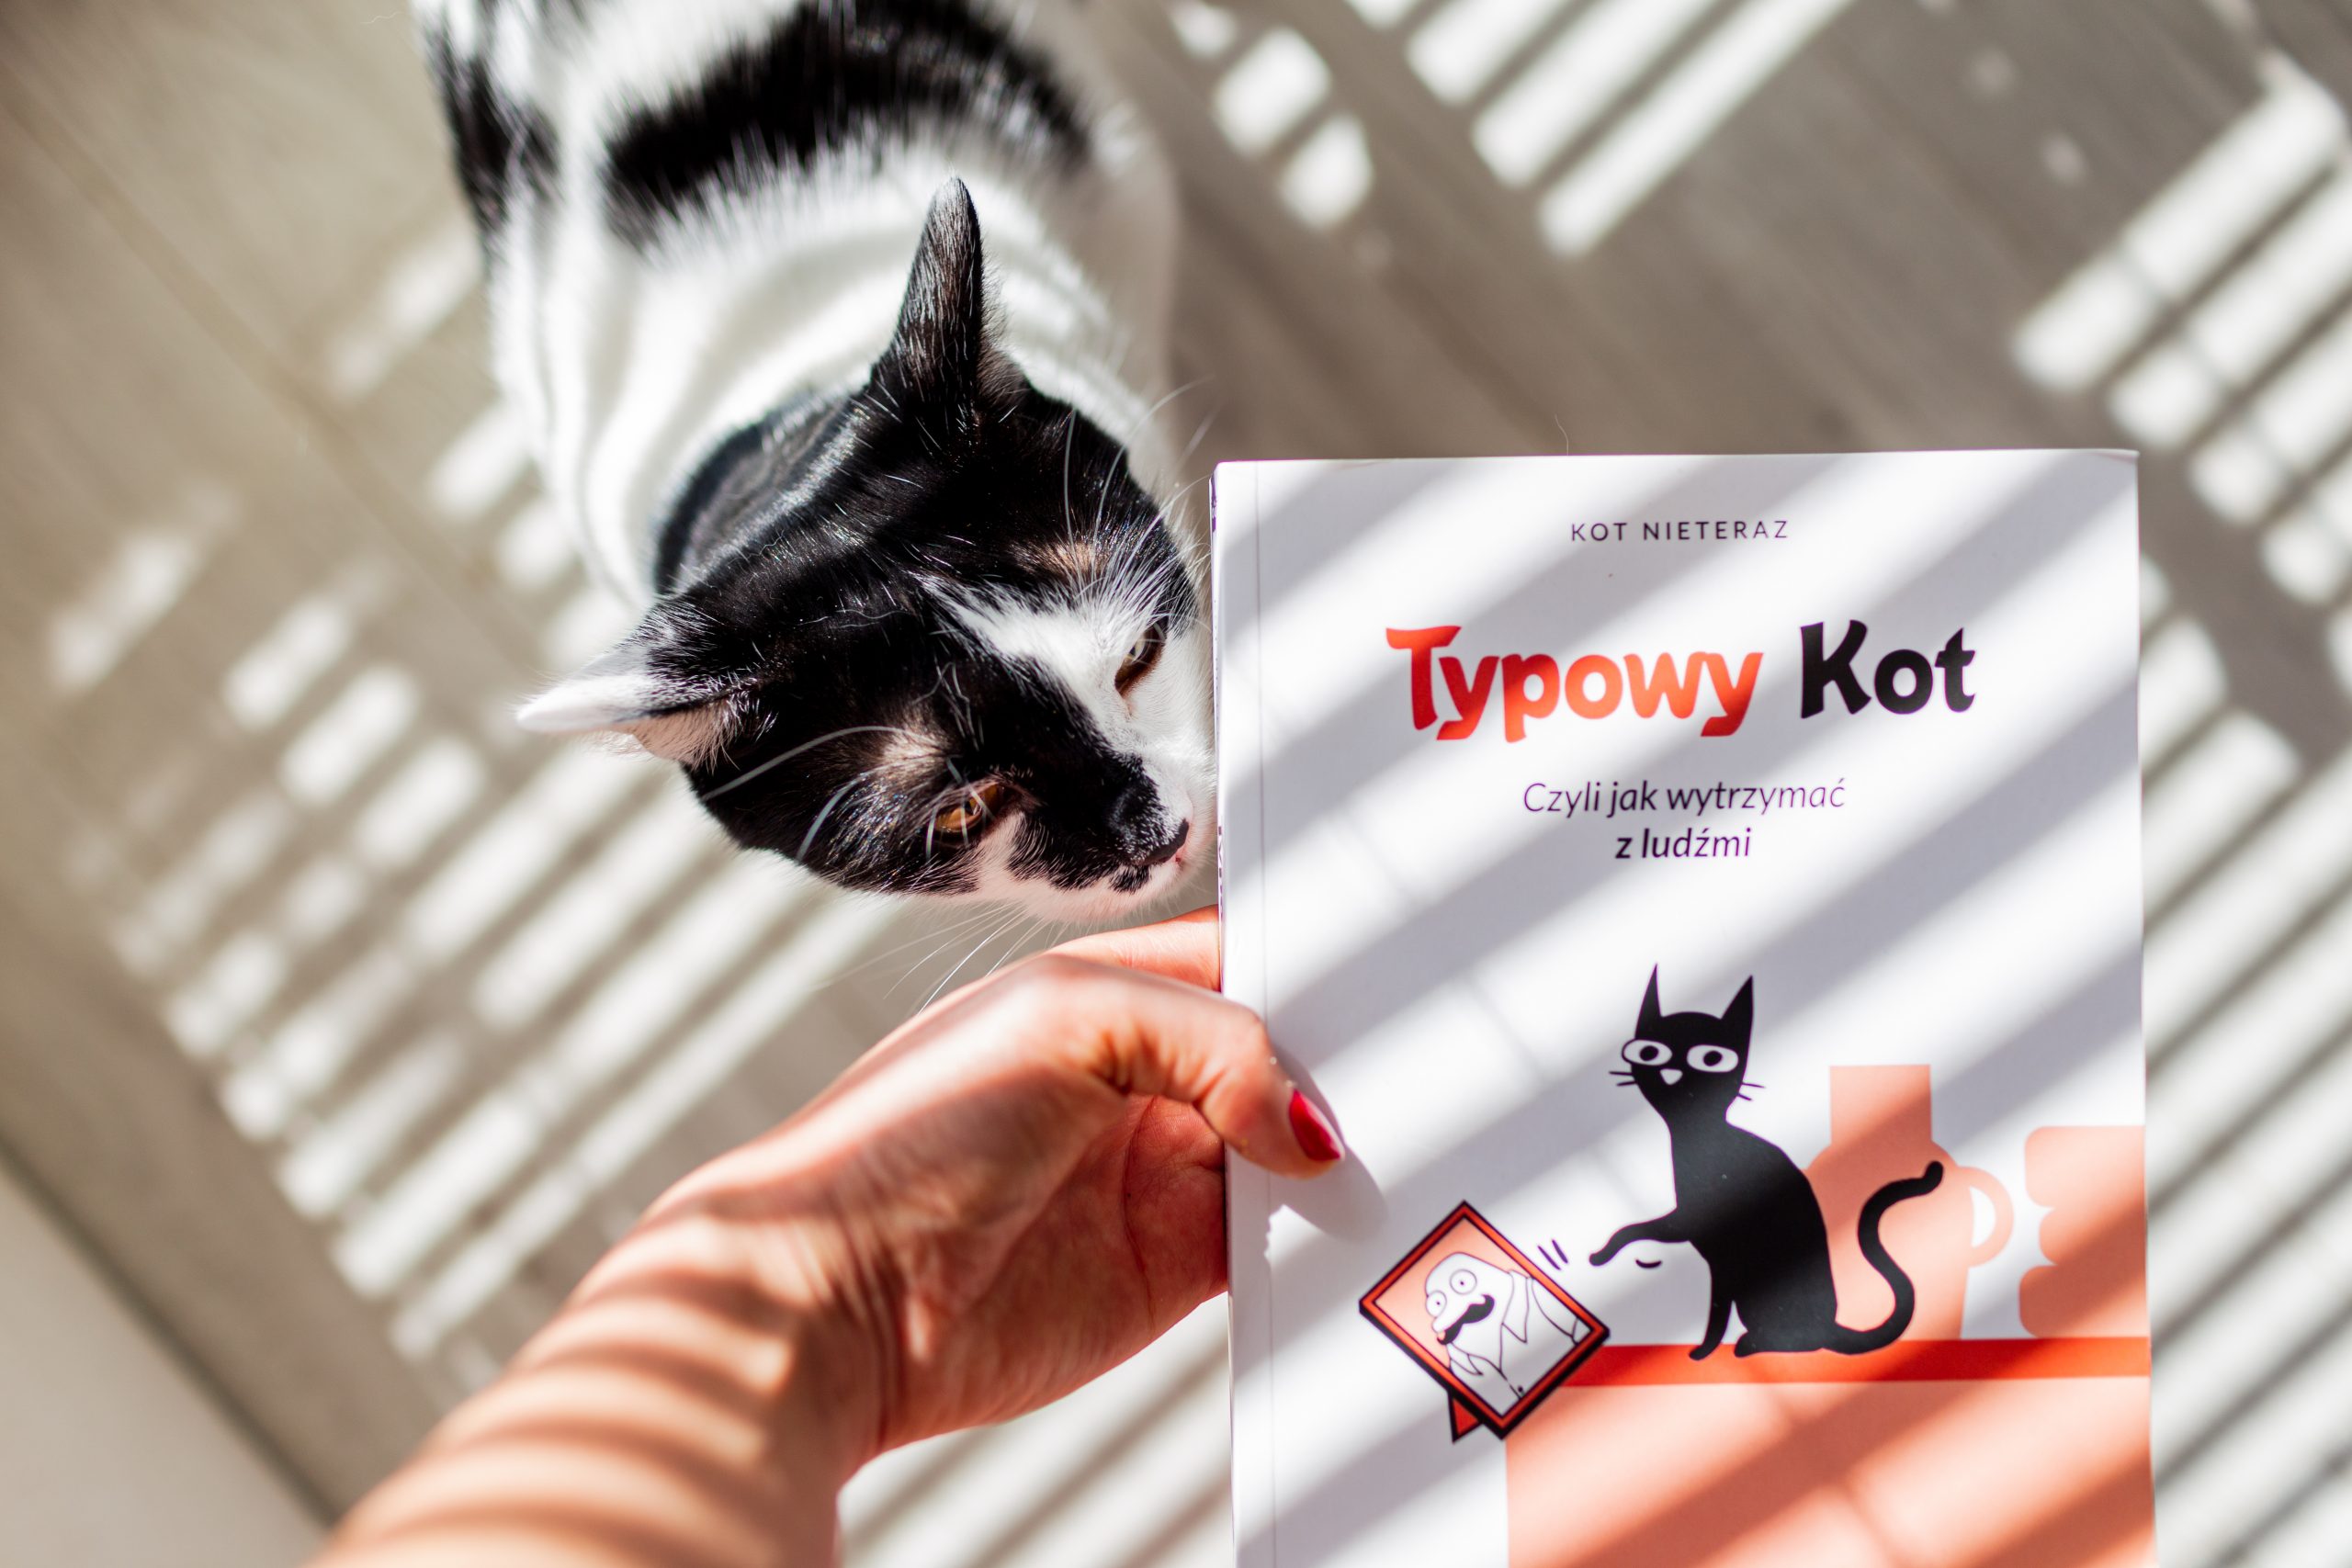 Książka „Typowy kot”, czyli słów kilka o Twoim kocie